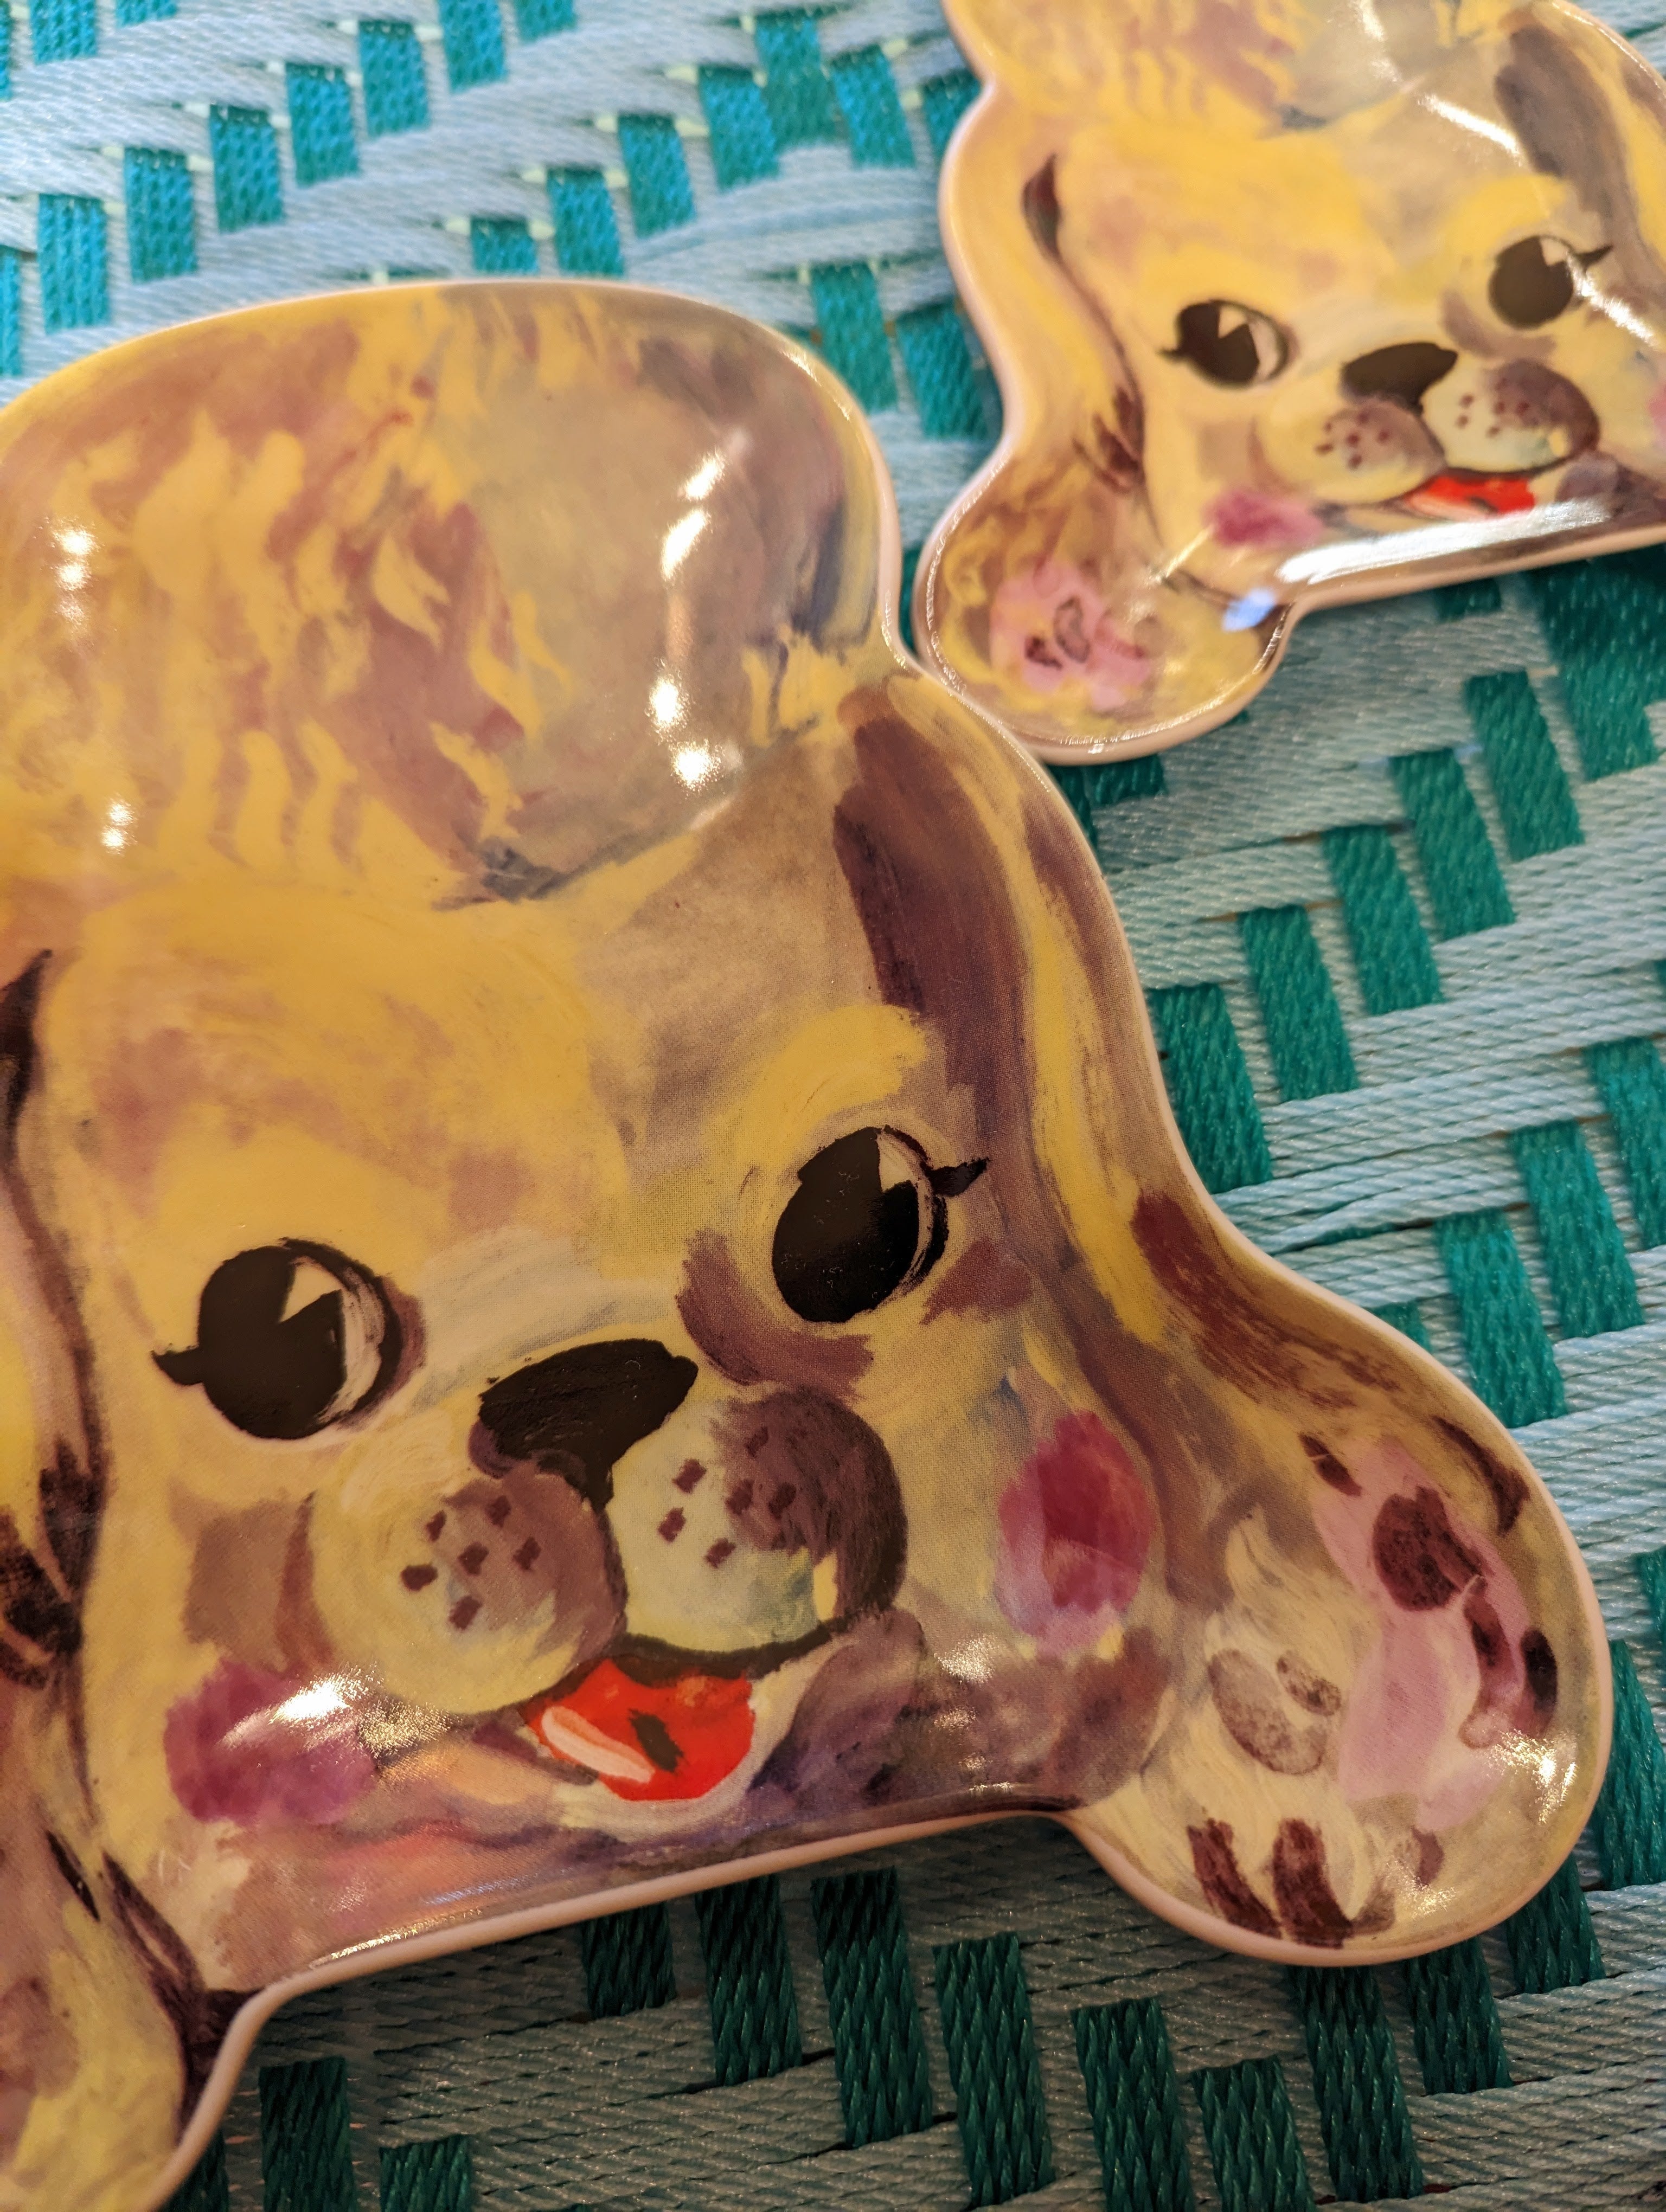 Cutie animal trinket trays